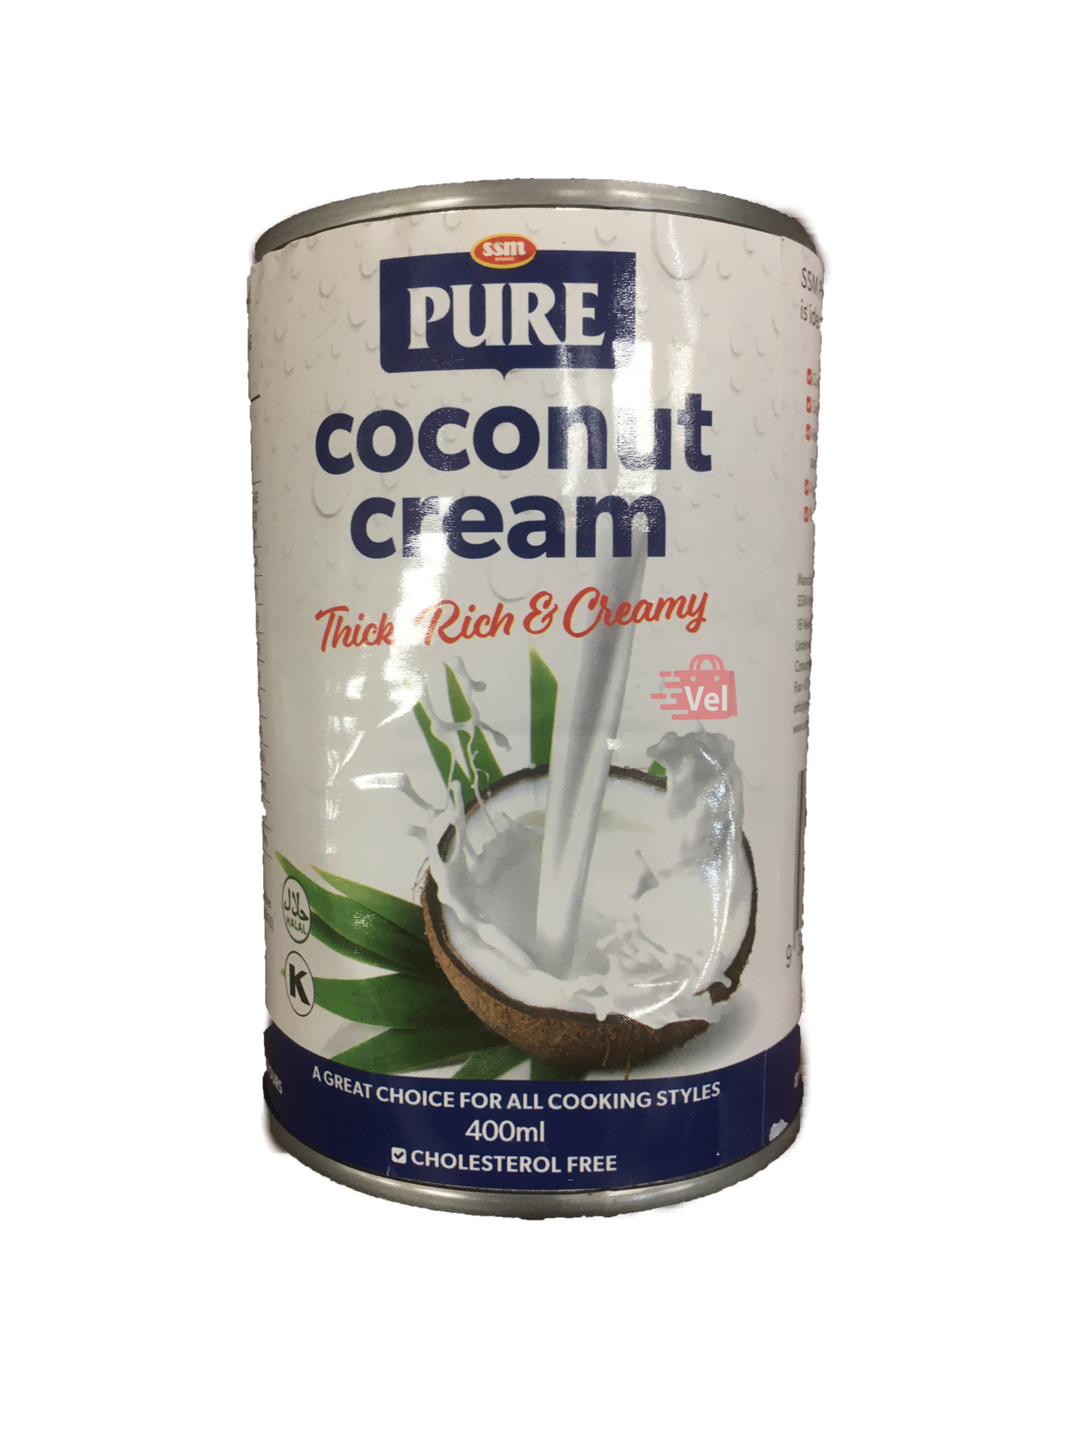 SSM Pure Coconut Cream 400ml